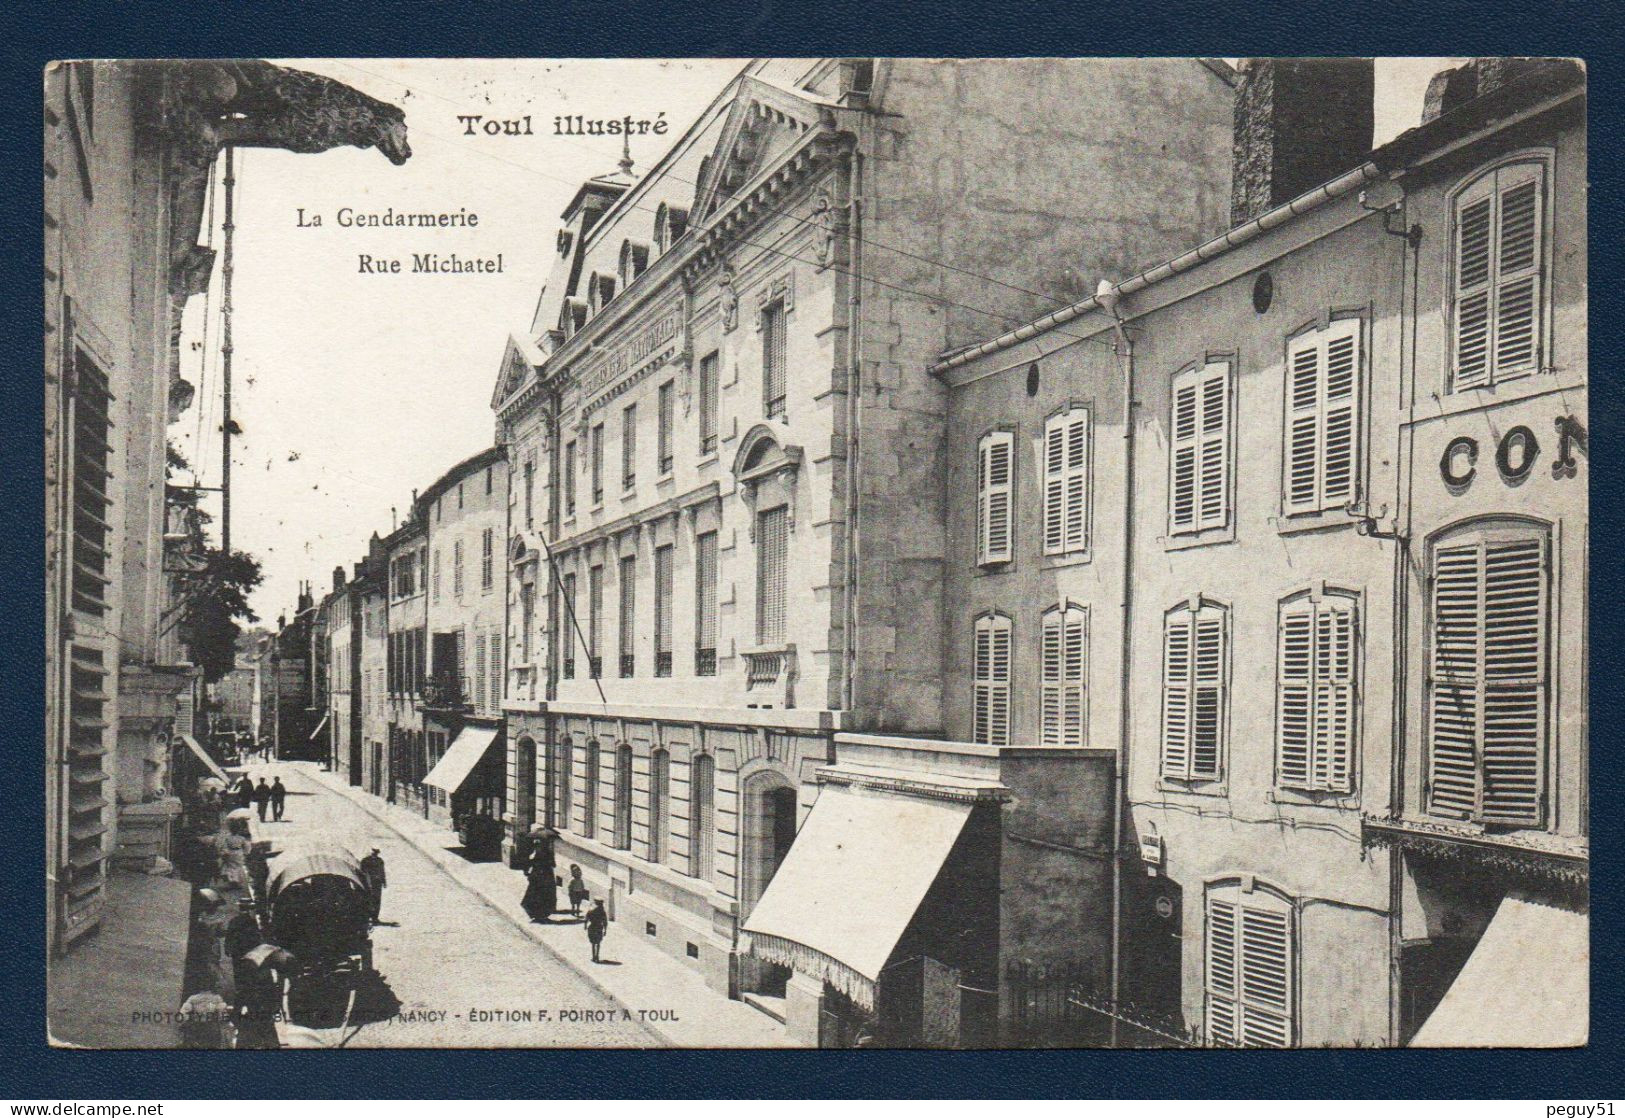 54. Toul. Rue Michatel. La Gendarmerie. Passants. 1904 - Toul